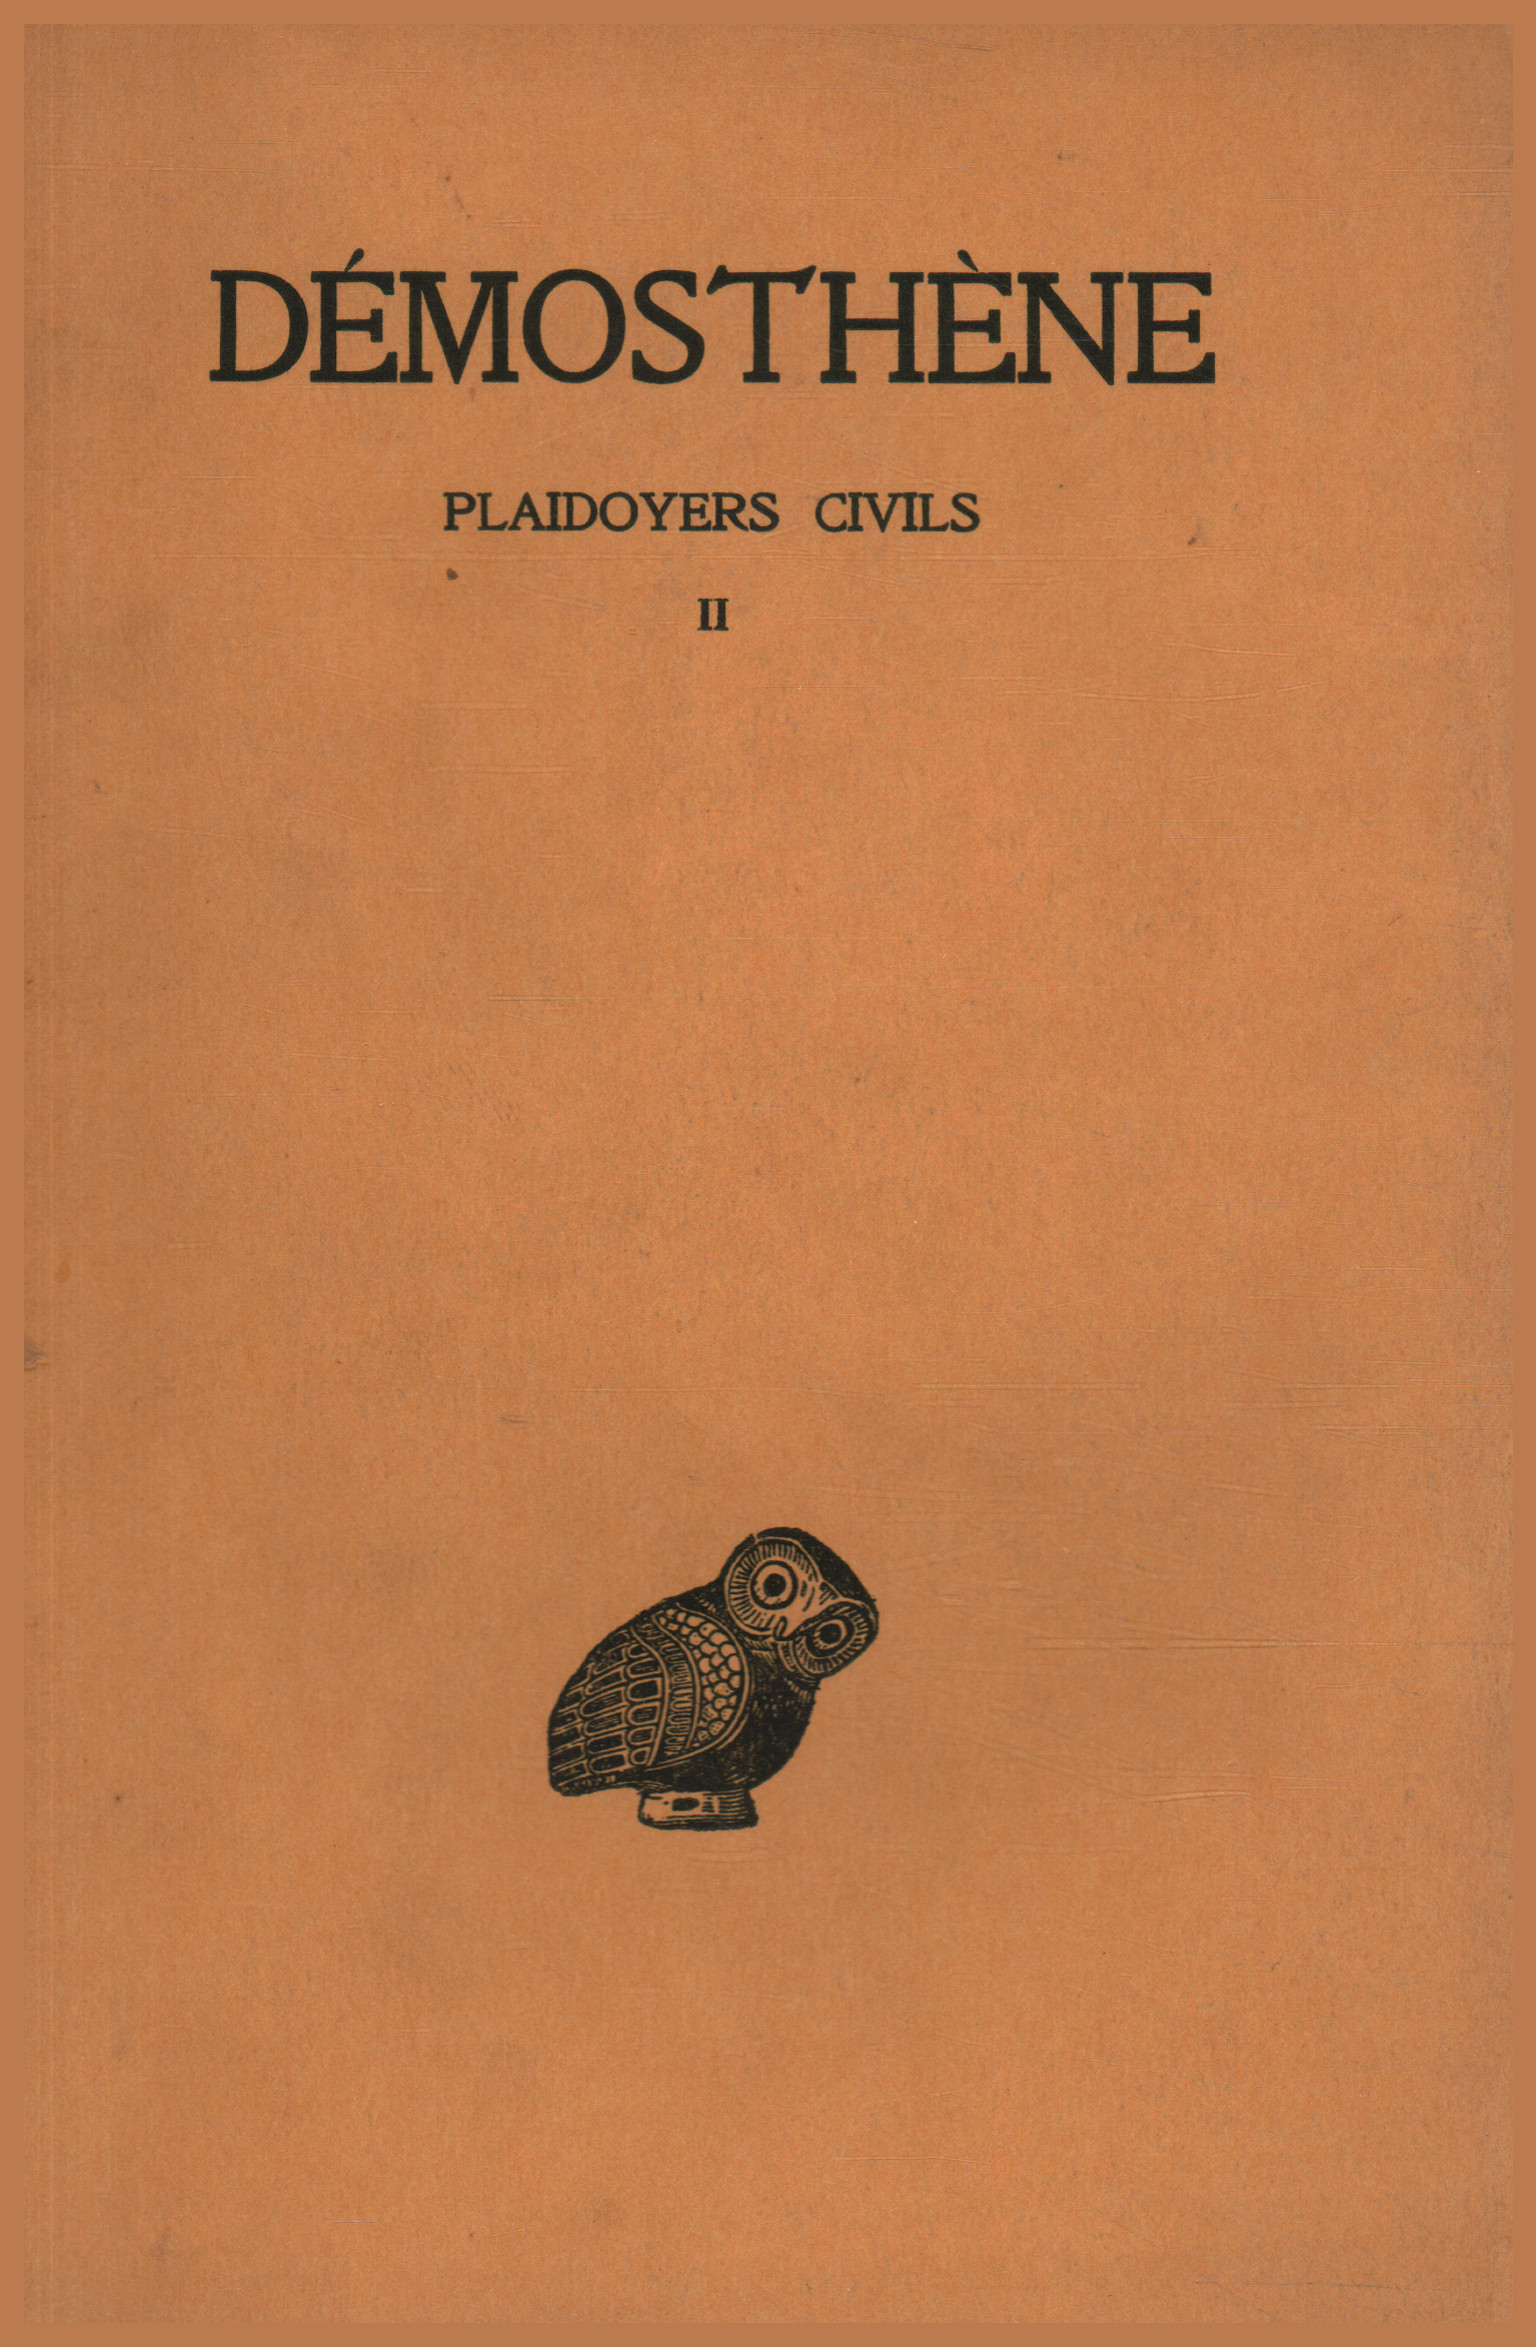 Plaidoyers Civils Band II